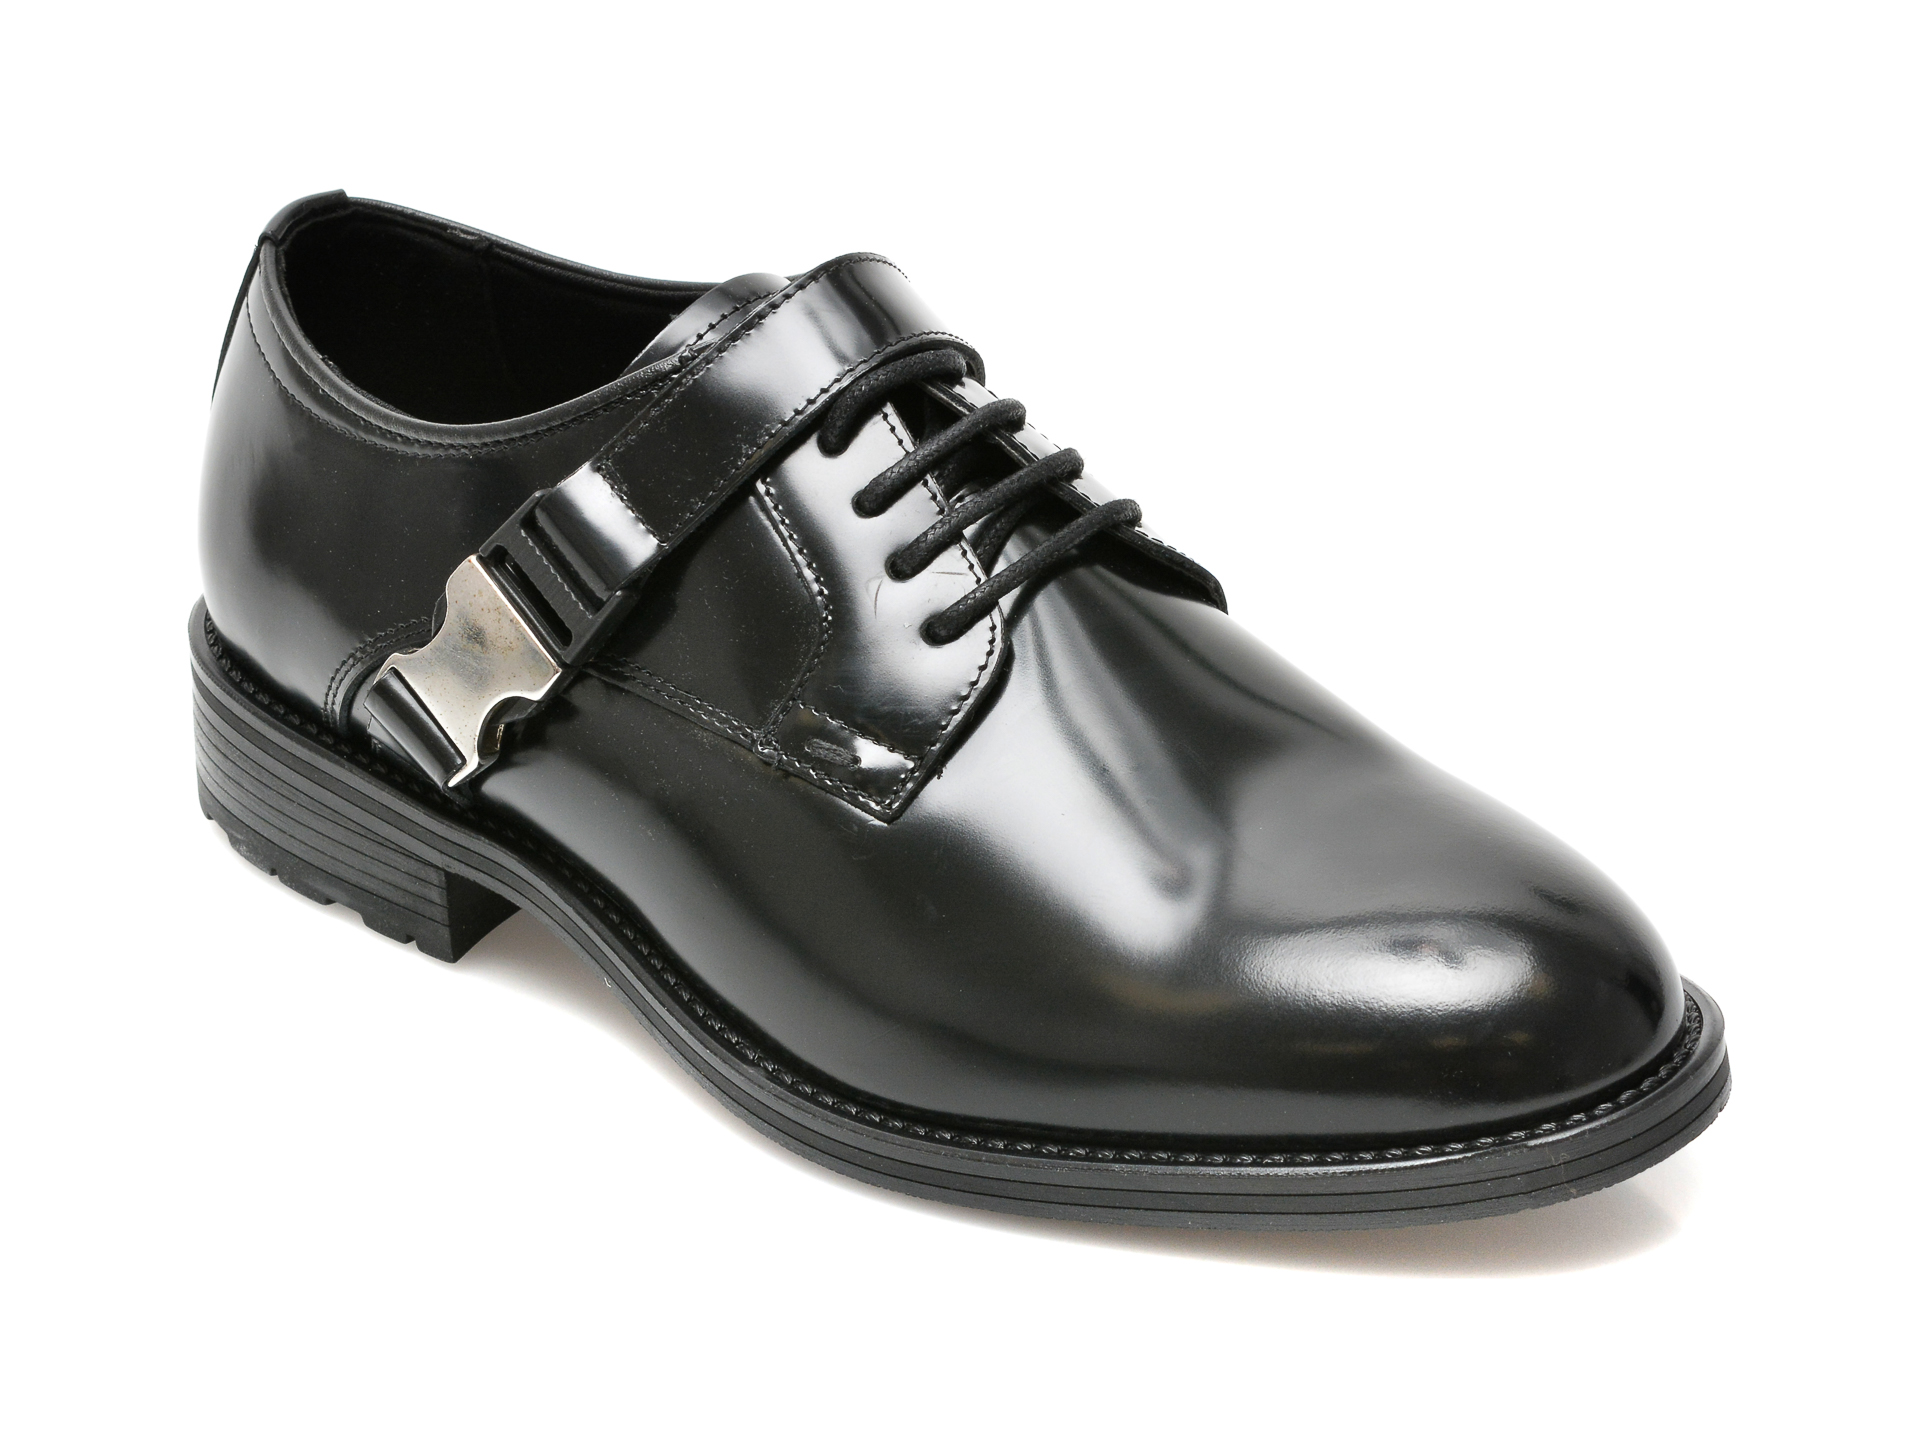 Pantofi ALDO negri, ETADOLIAN001, din piele naturala lacuita Aldo